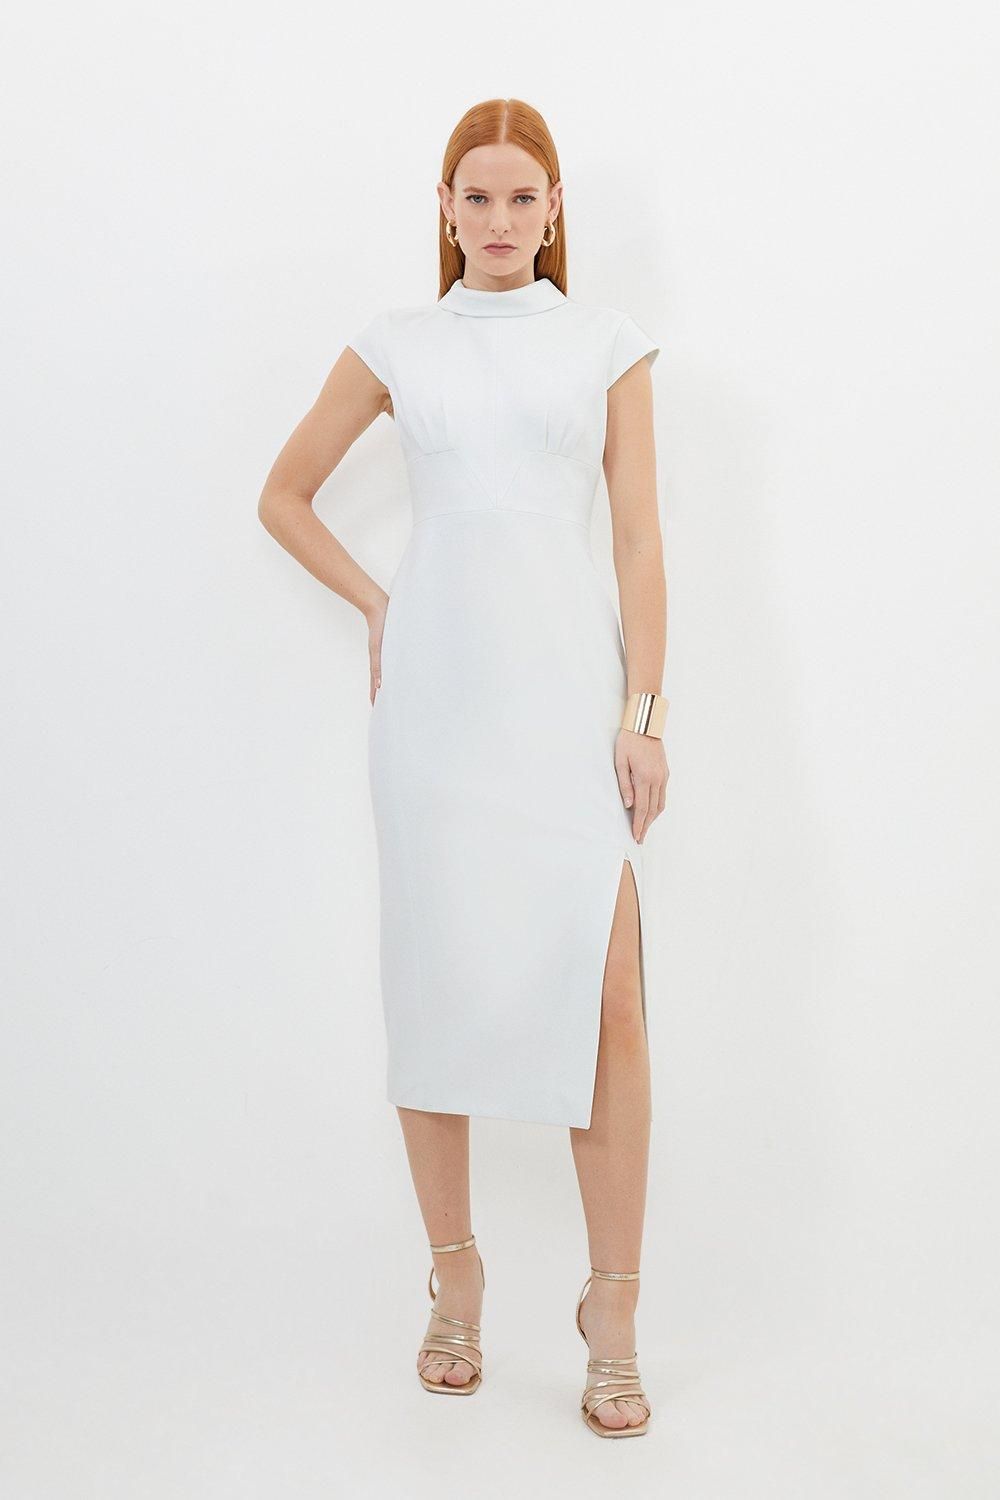 Tailored Structured Crepe High Neck Cap Sleeve Midi Dress | Karen Millen US